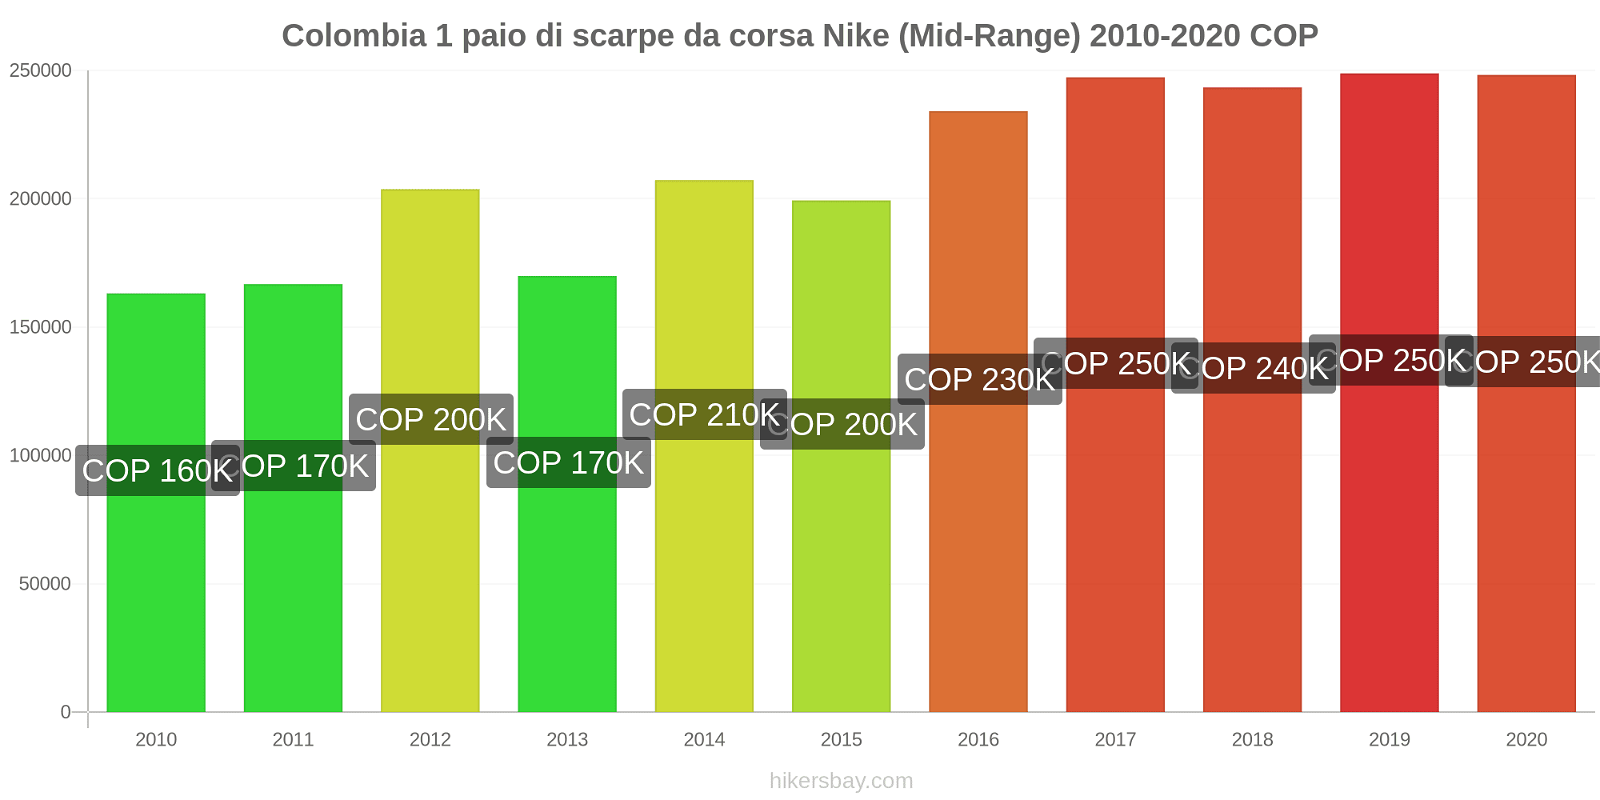 Colombia variazioni di prezzo 1 paio di scarpe da corsa Nike (simile) hikersbay.com